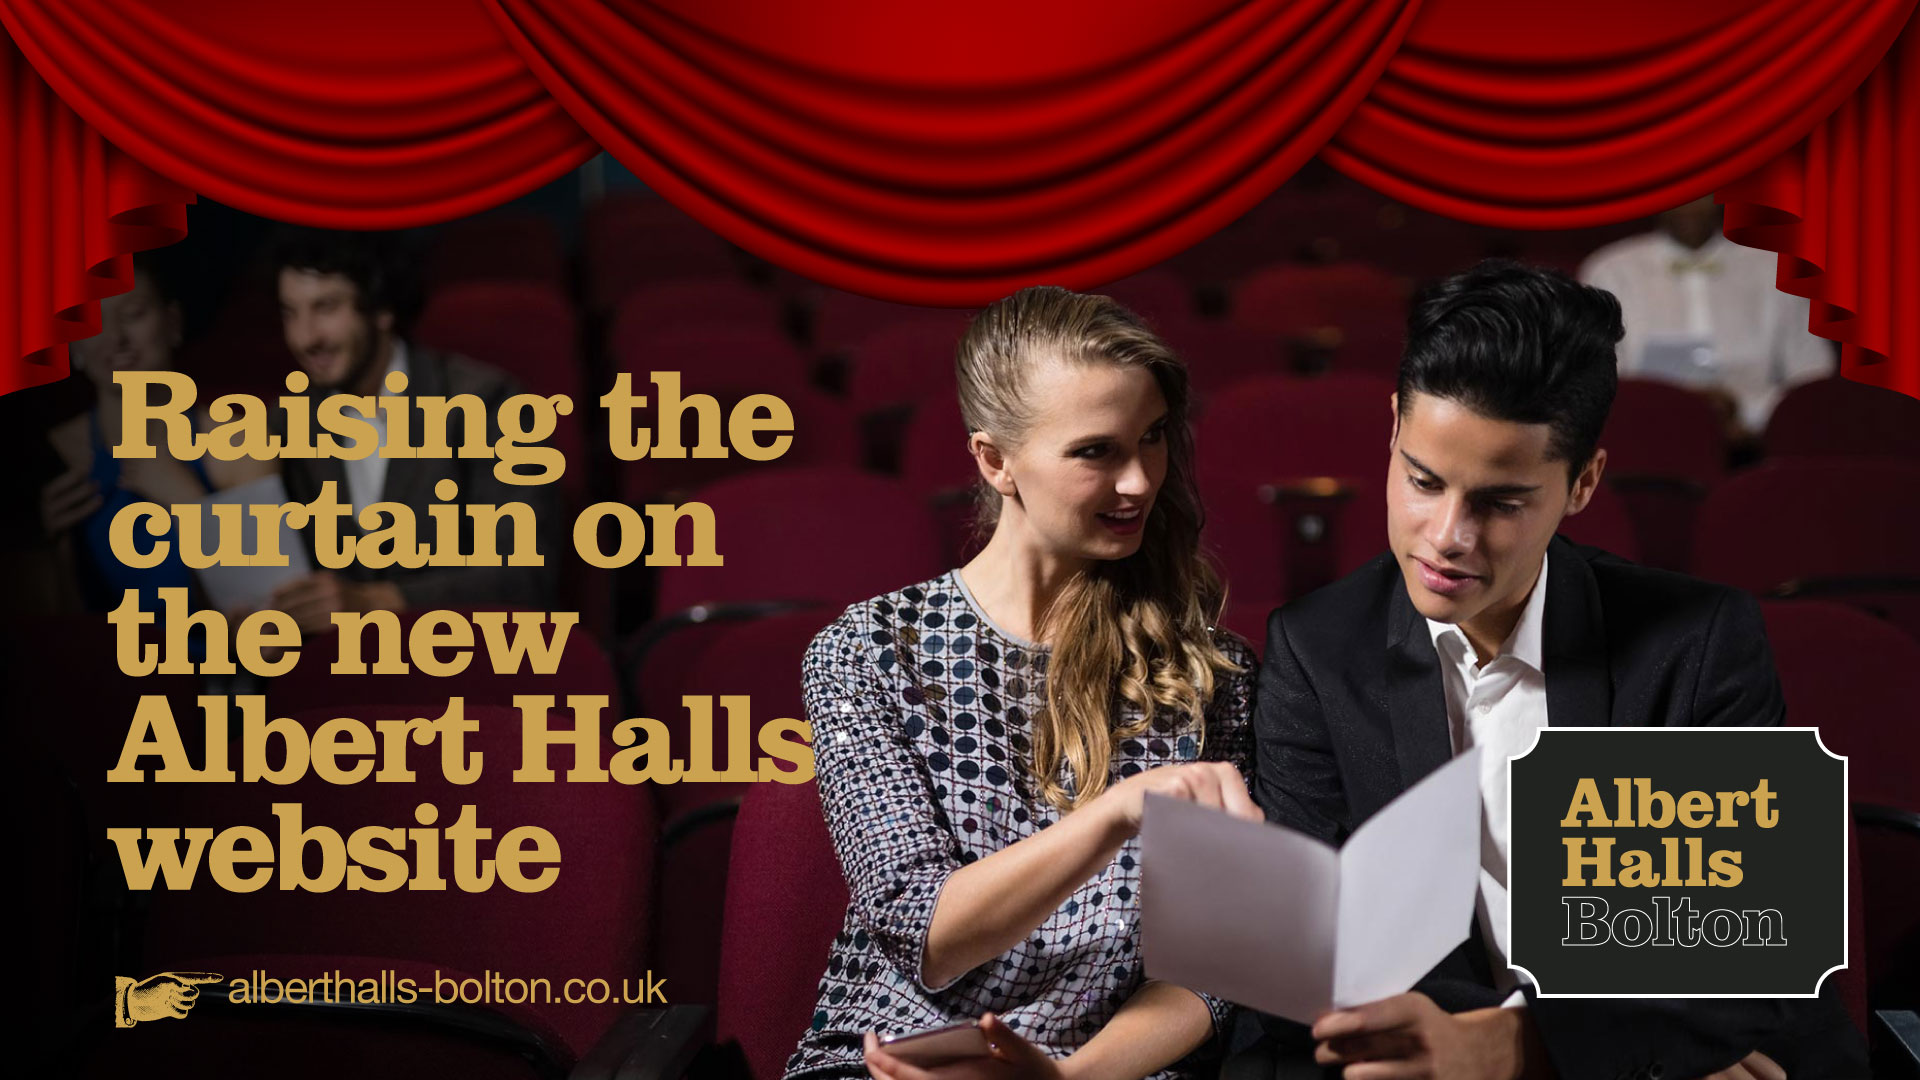 Raising the curtain on the Albert Halls website